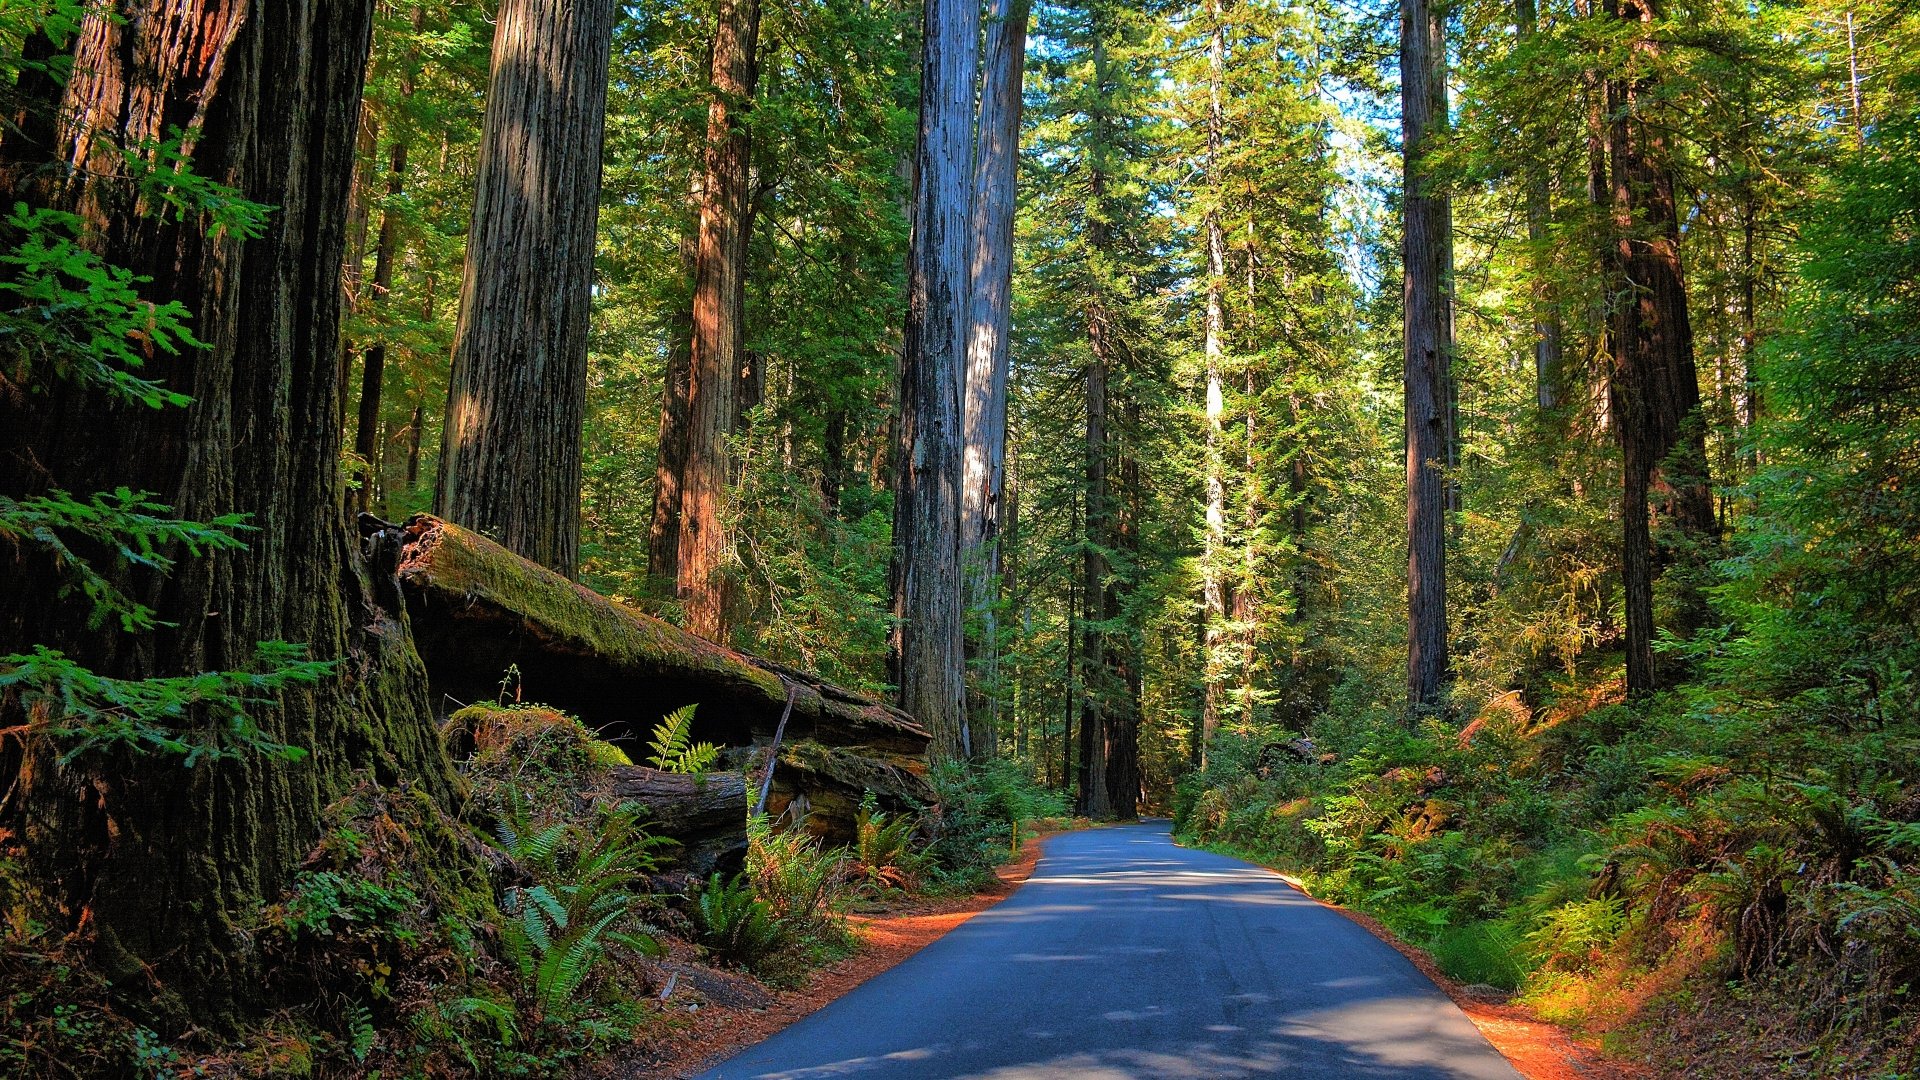 1K Redwood Forest Pictures  Download Free Images on Unsplash